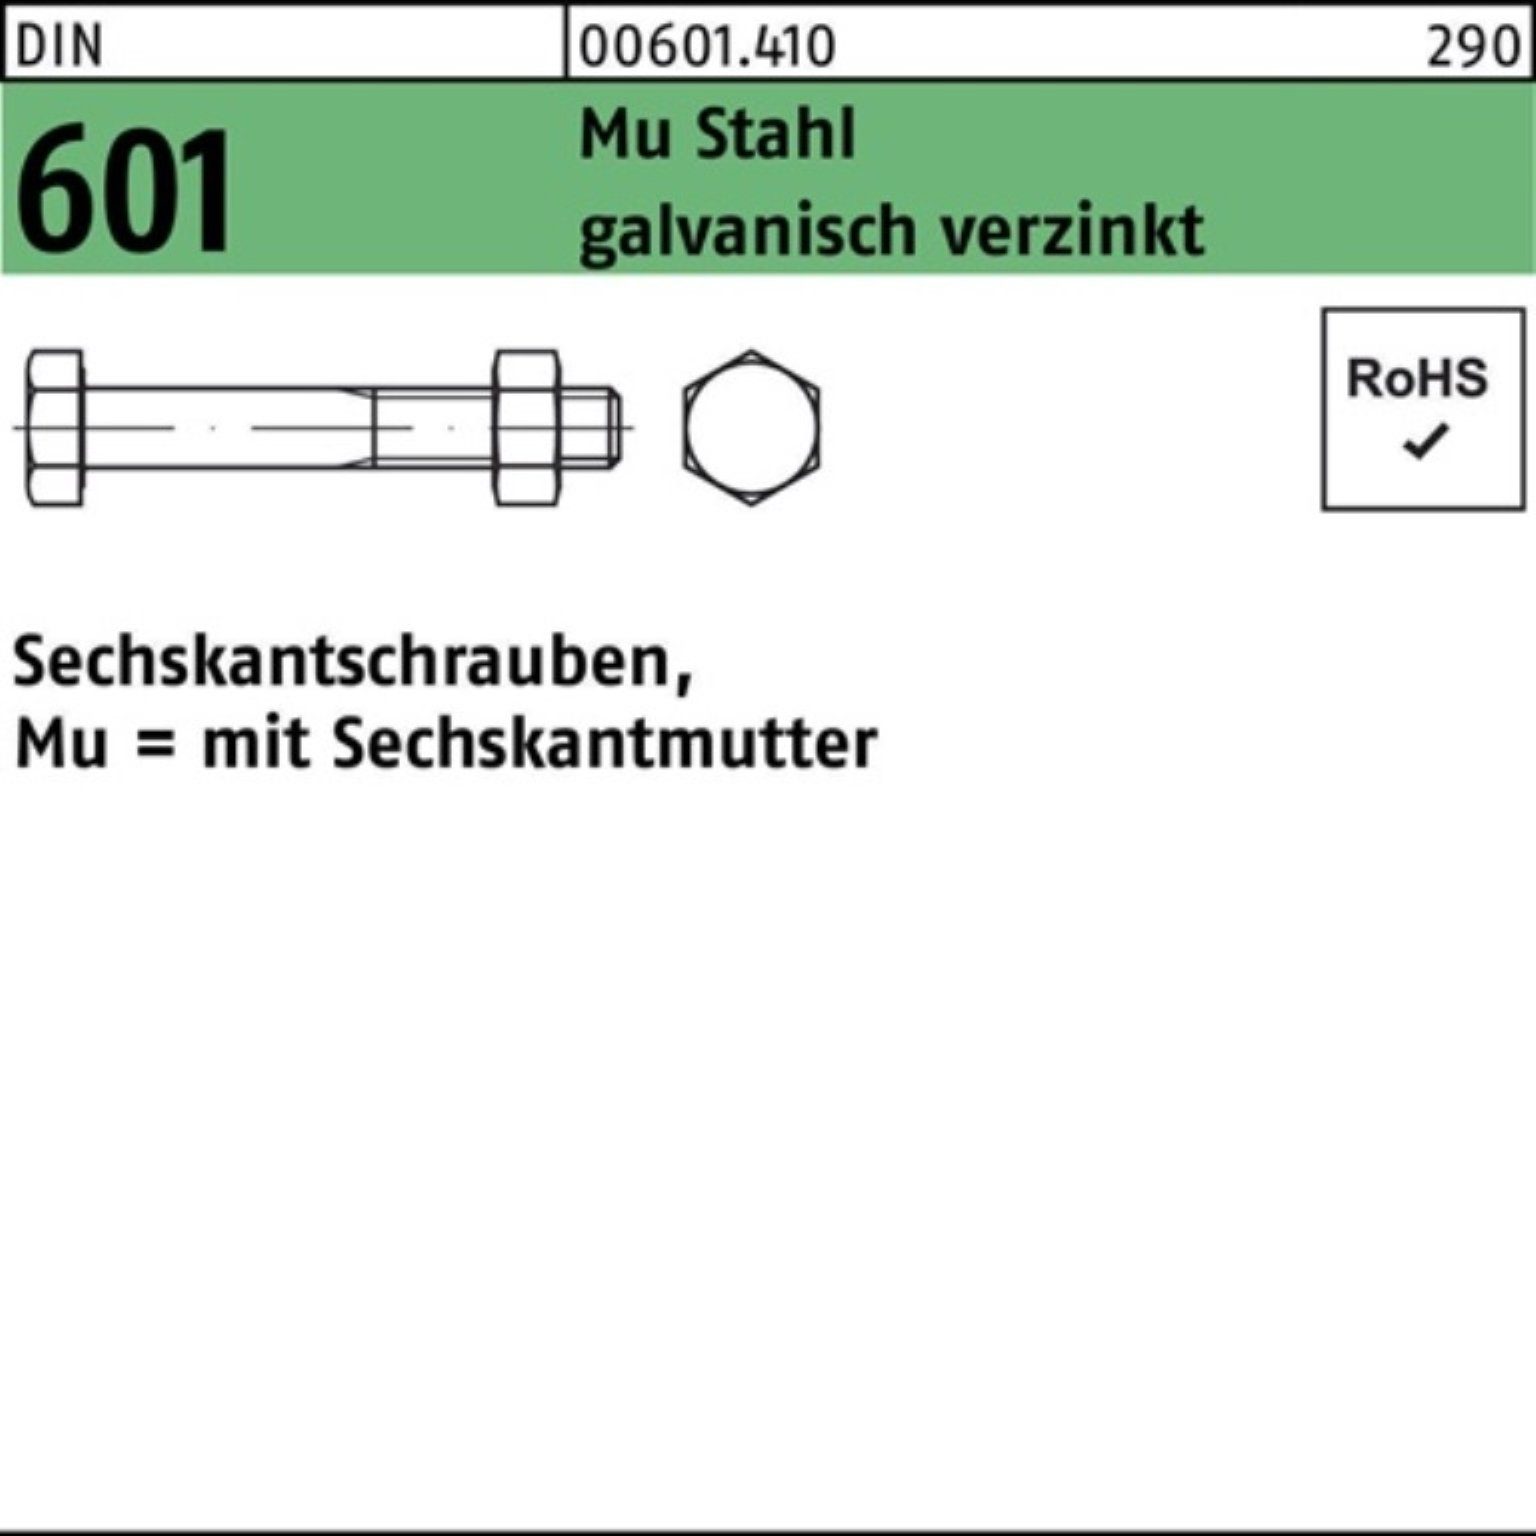 Reyher Sechskantmutter 200er Pack Sechskantschraube DIN 601 Sechskantmutter M8x35 Mu Stahl 4.